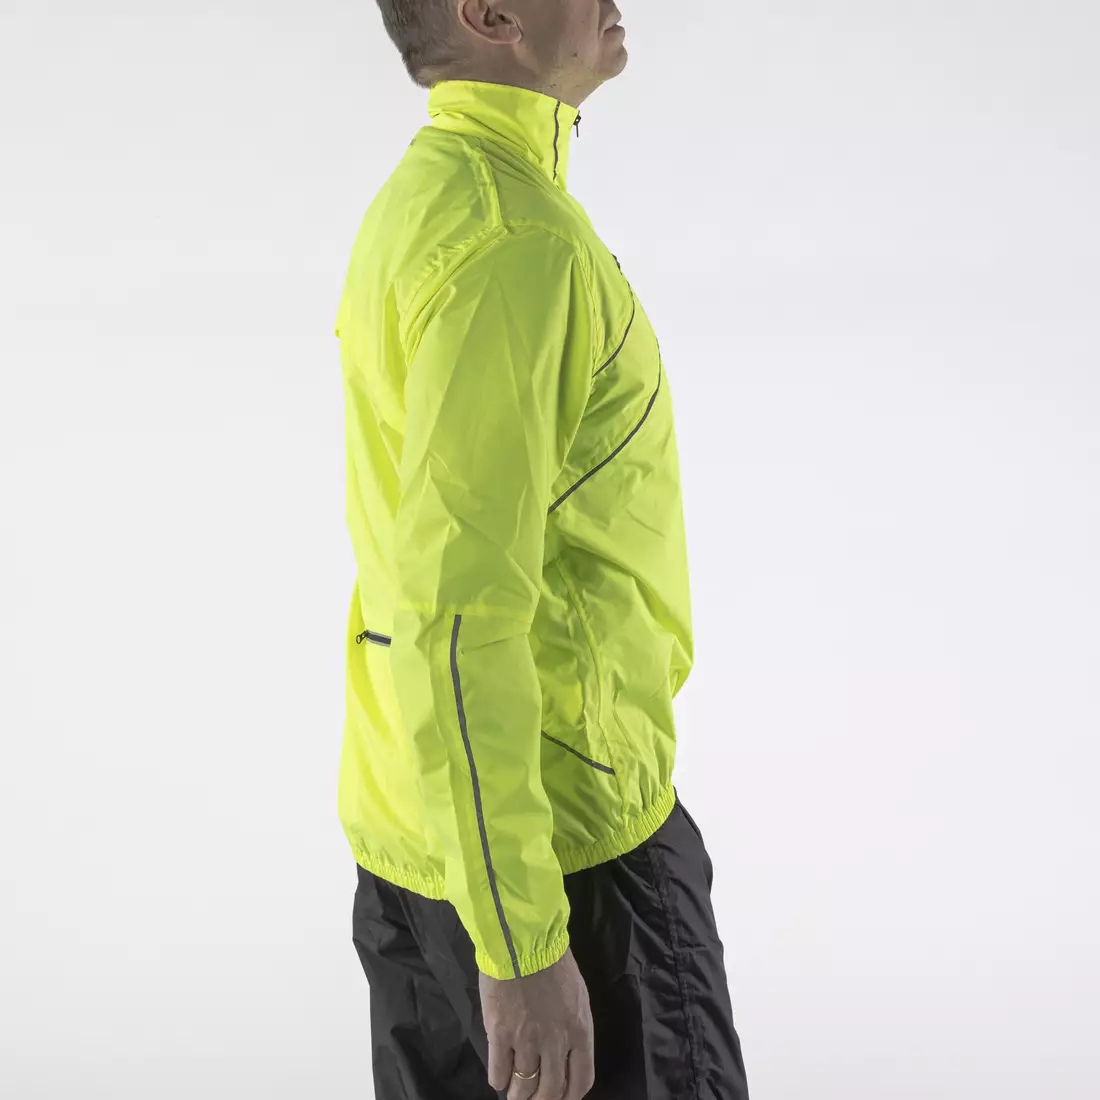 KAYMAQ J1 férfi kapucnis eső kerékpáros dzseki, fluoro sárga